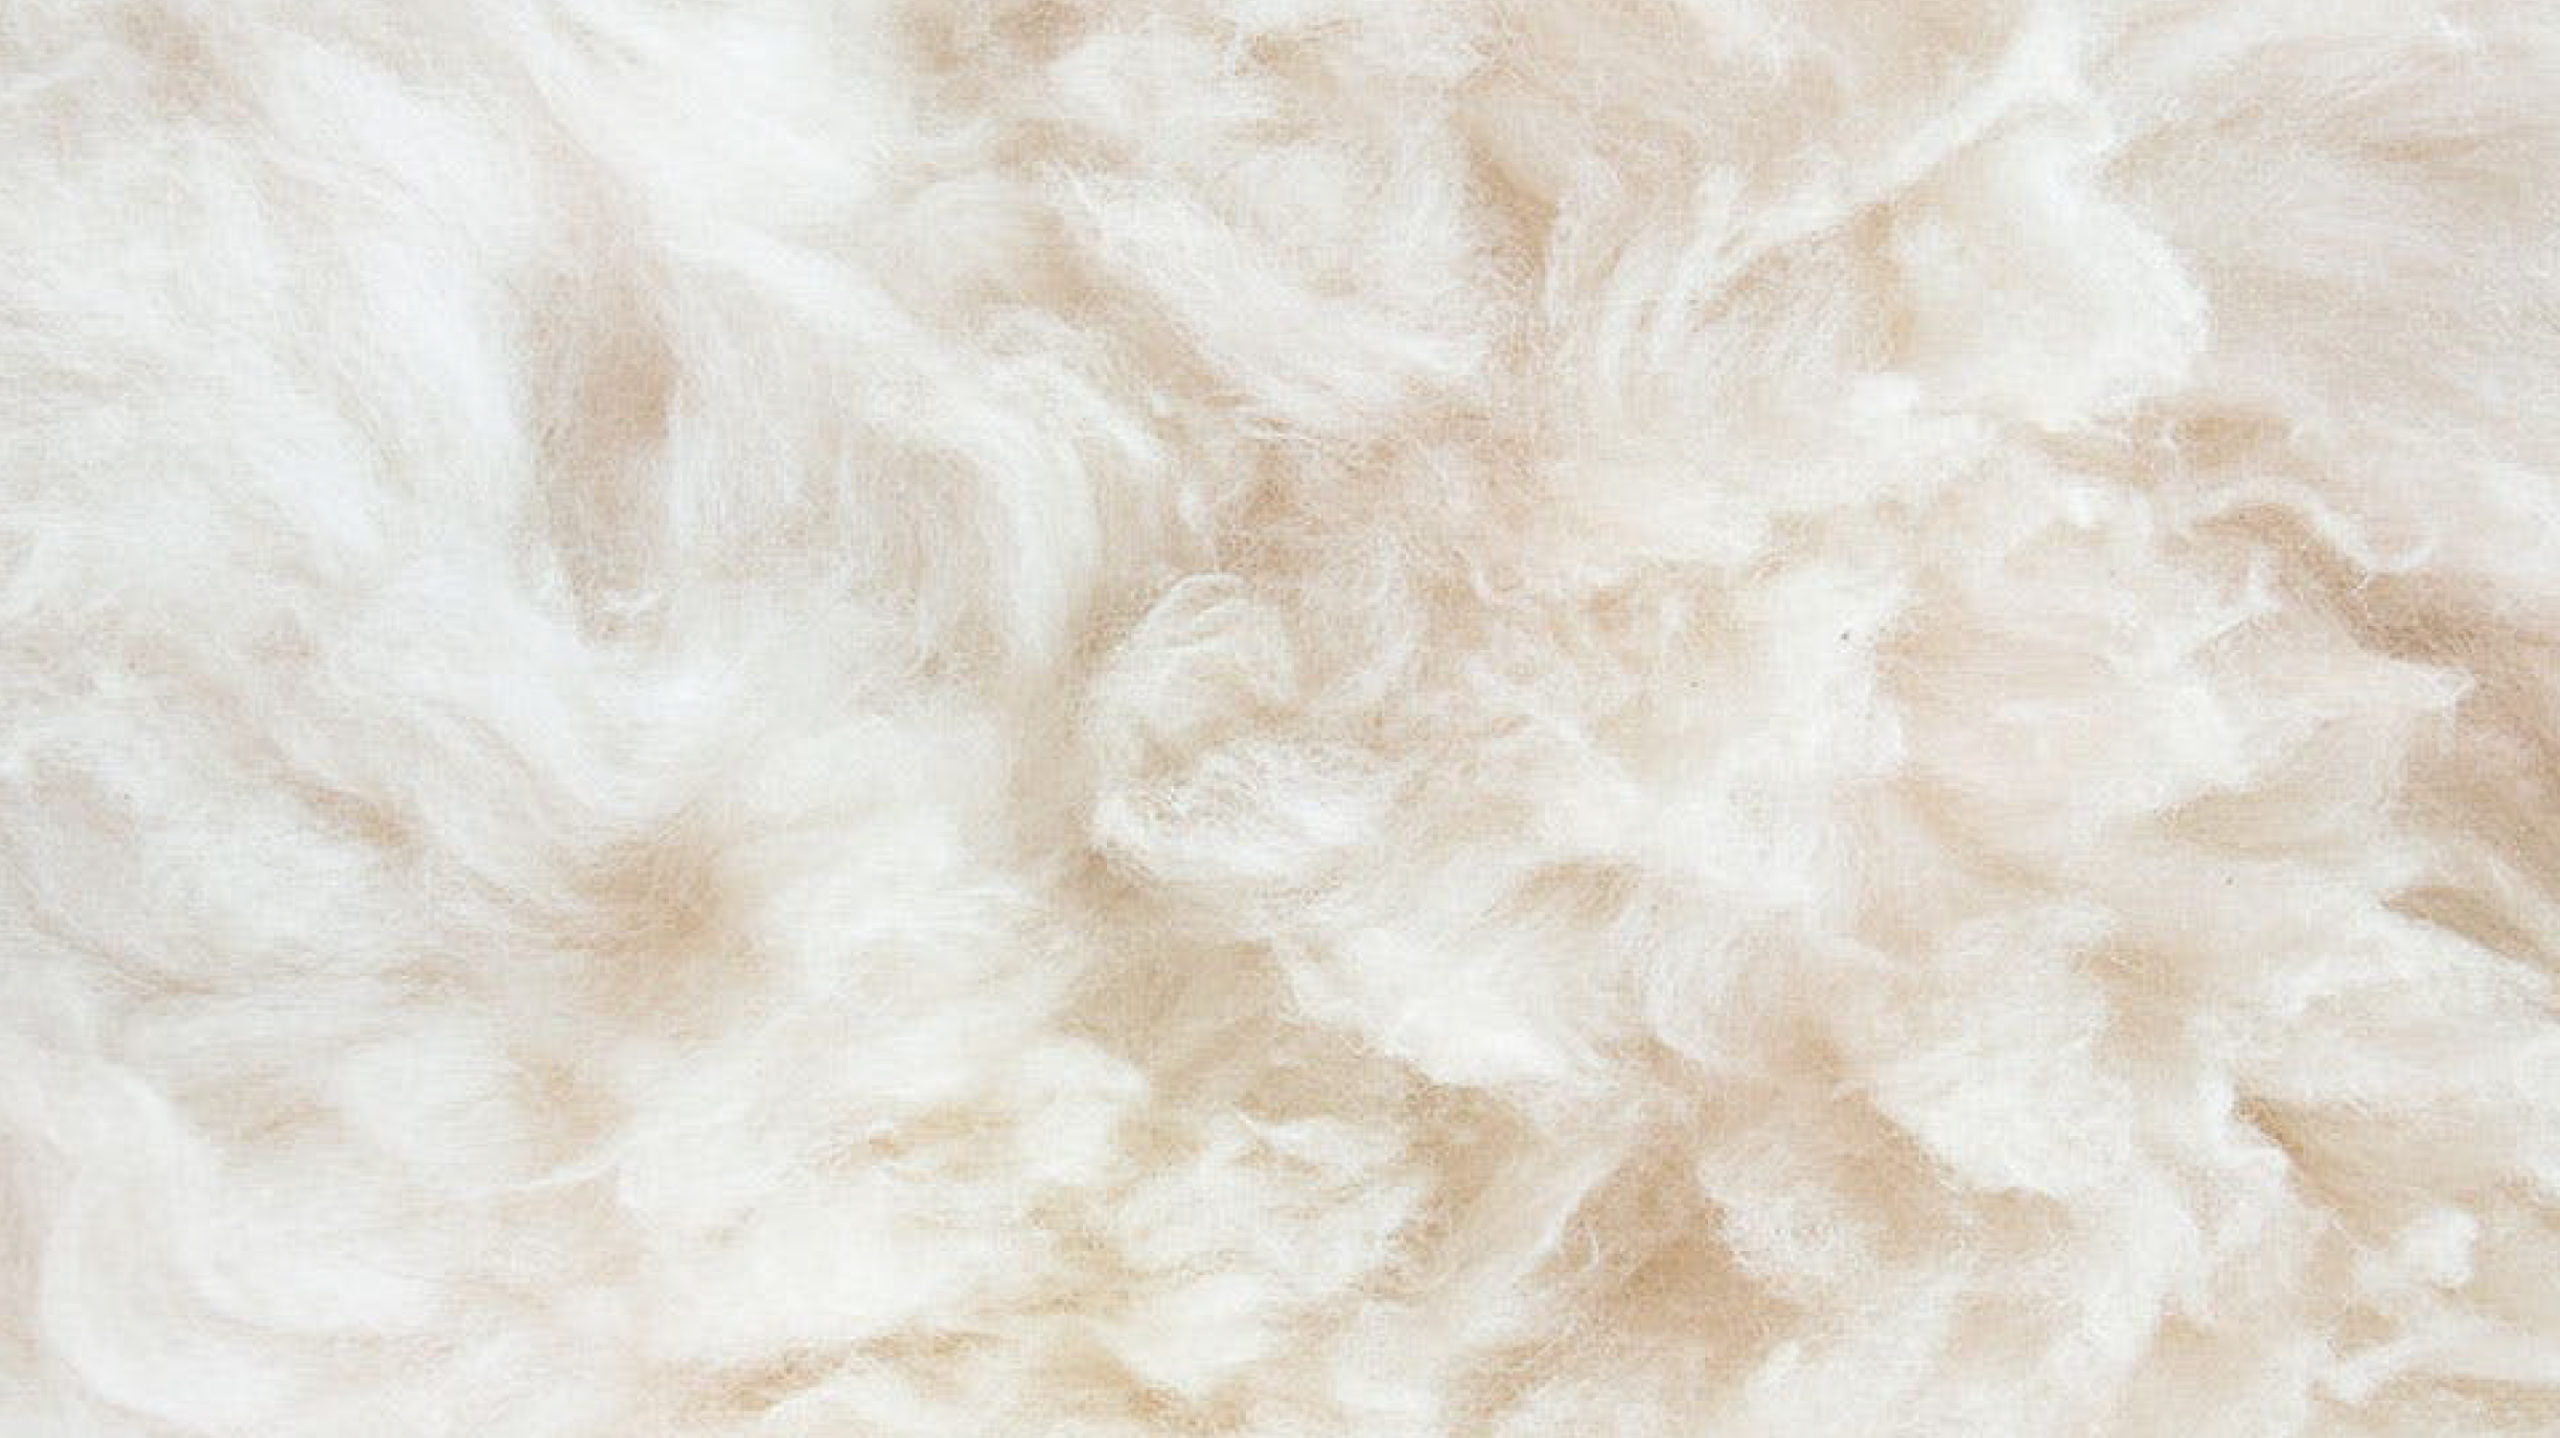 Content1 Lunio Australian Wool Duvet